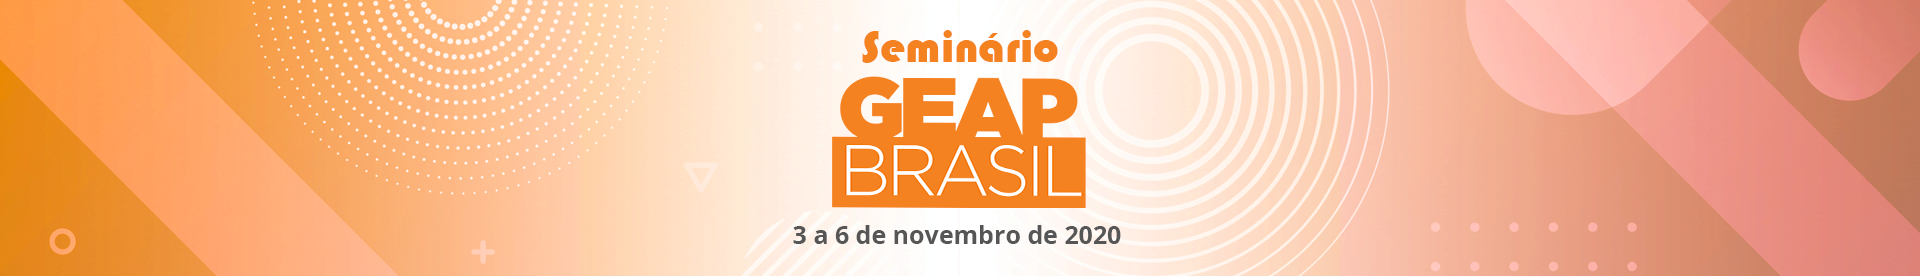 banner - Seminário GEAP BR